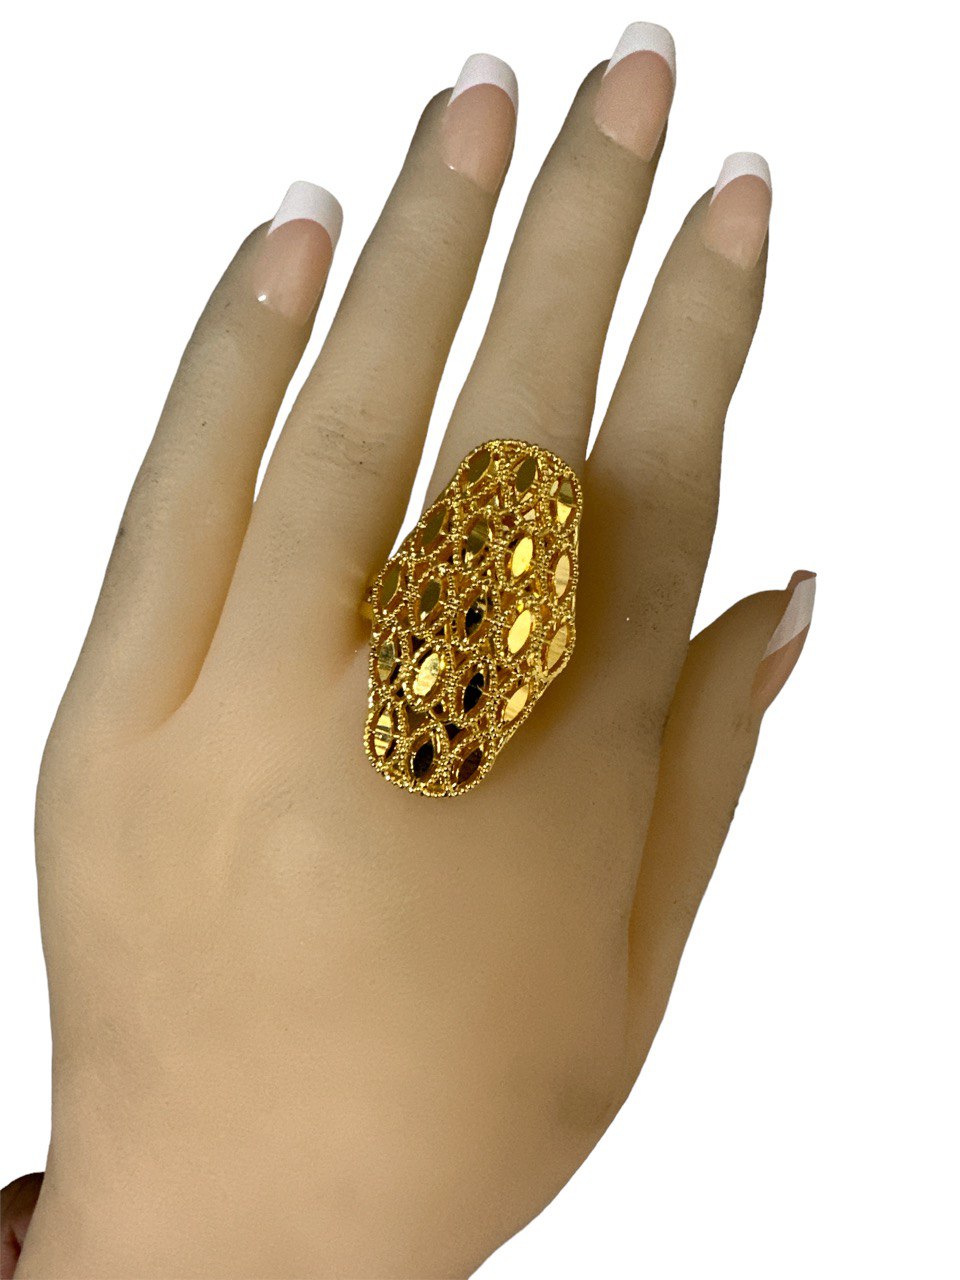 24k 1 Gram Gold Plated Large Adjustable Size fits all Finger Ring # 7871-2